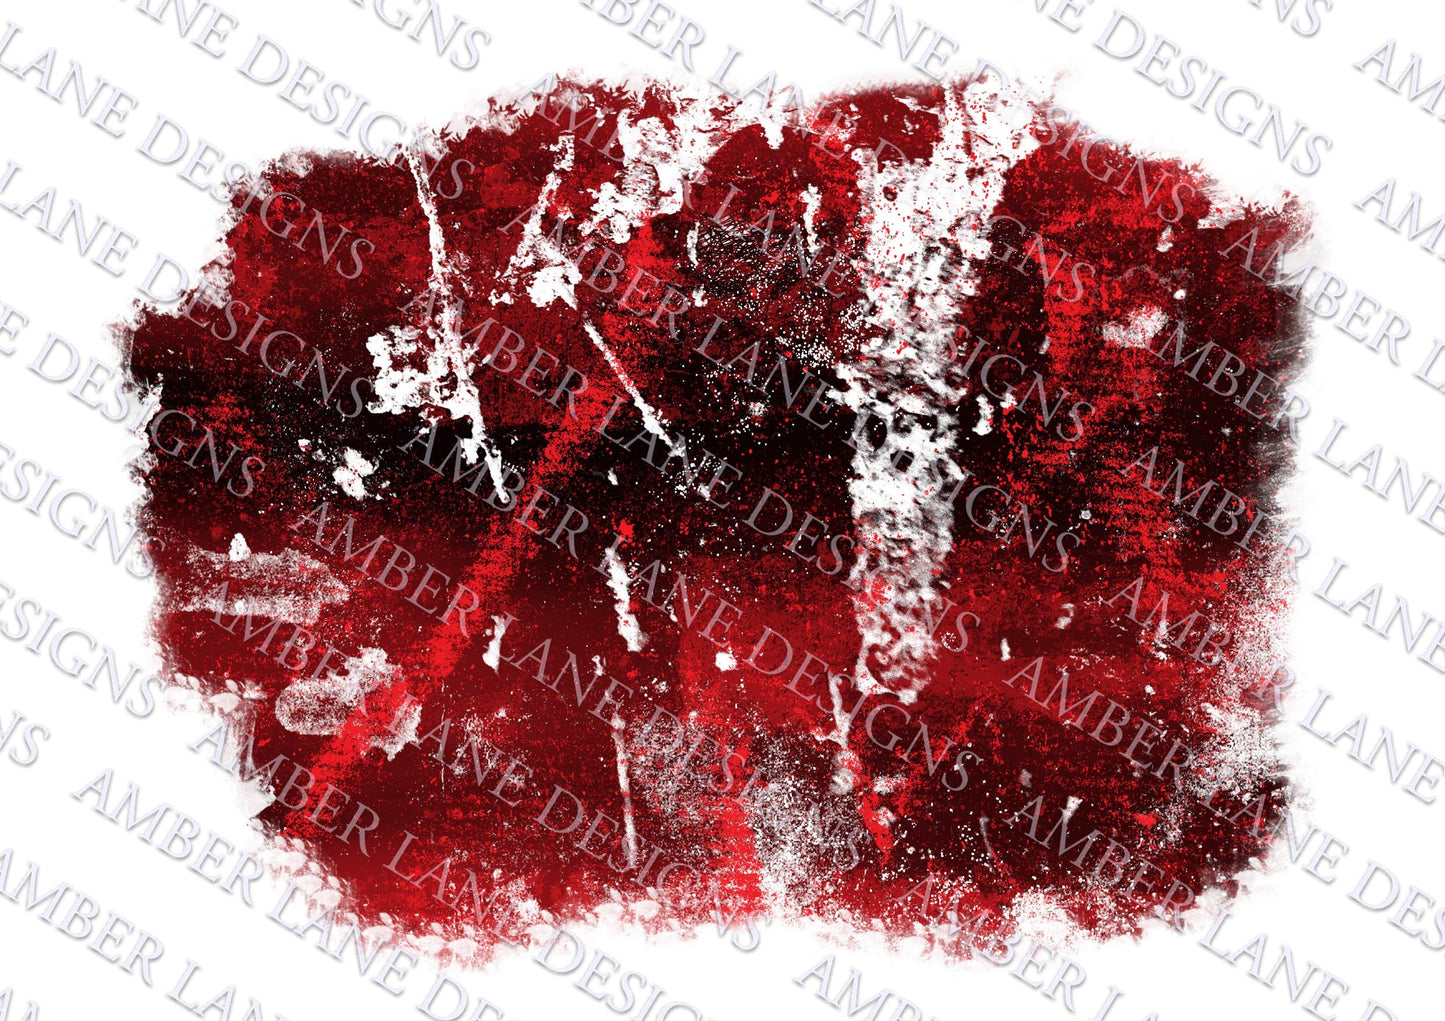 Red grunge paint marks background, Halloween background, backsplash frame ,png file only